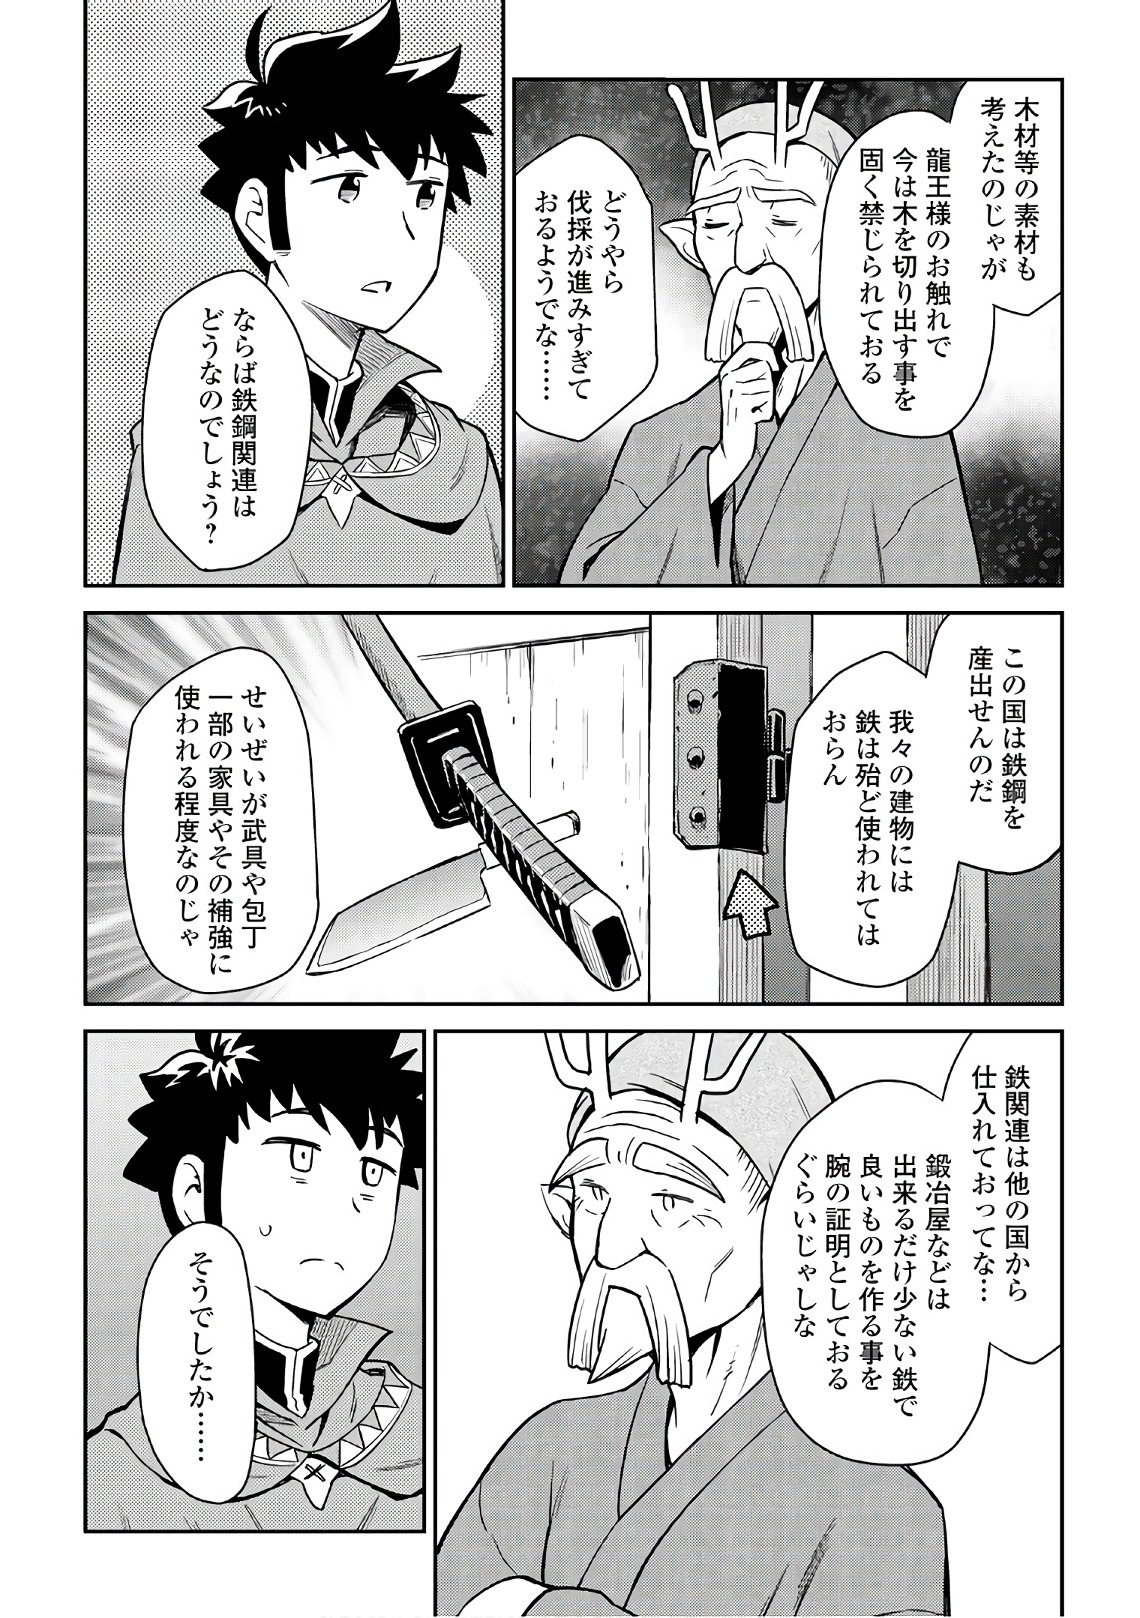 Toaru Ossan no VRMMO Katsudouki - Chapter 43 - Page 8